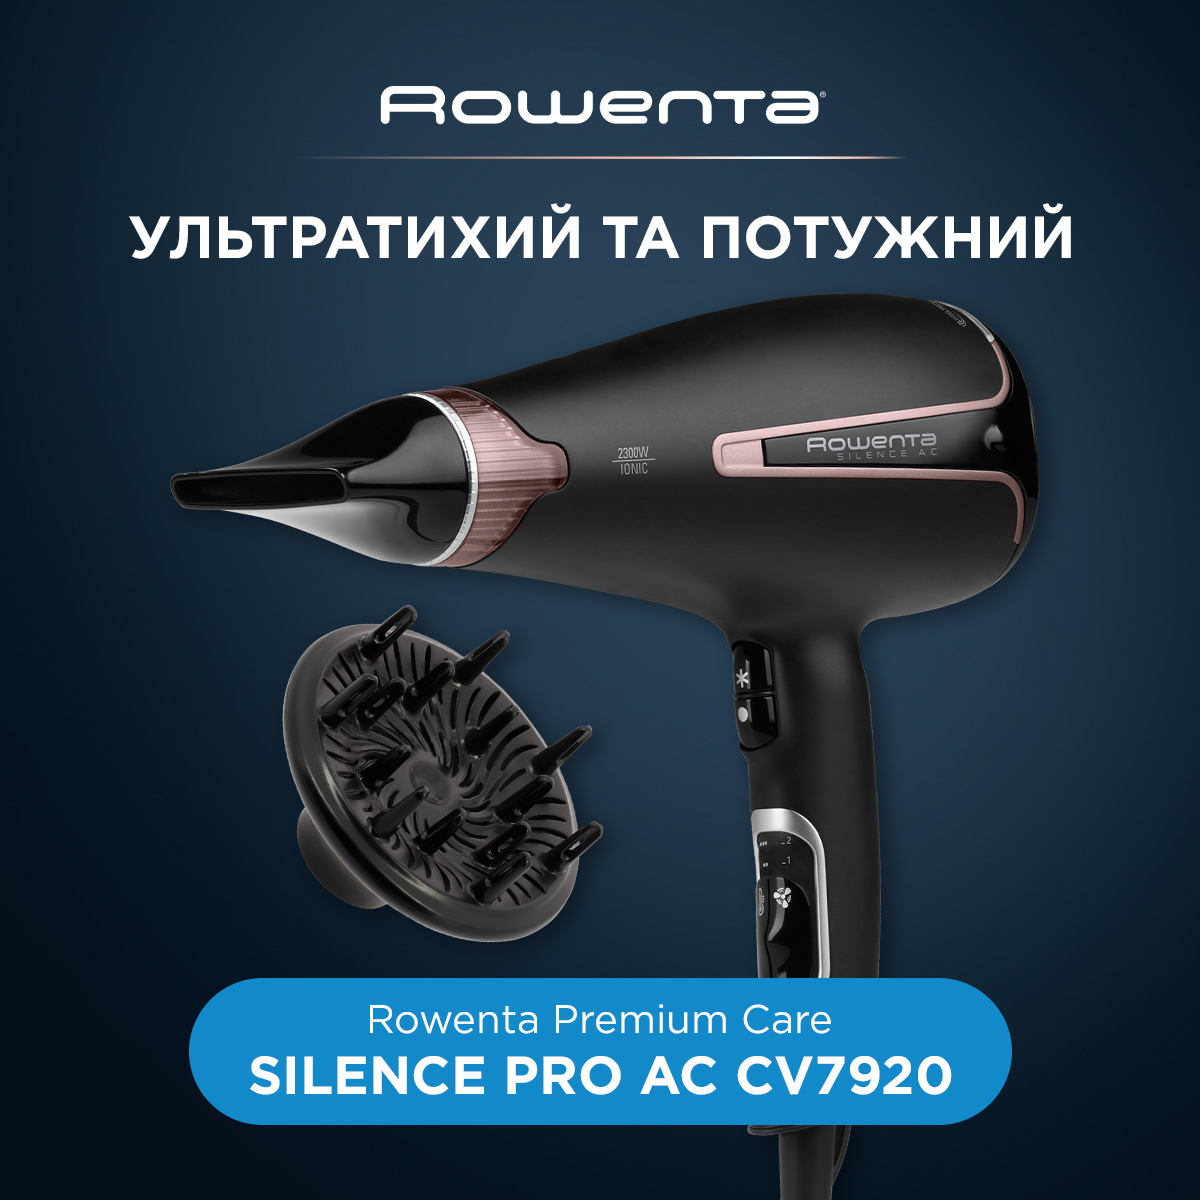 Secador Rowenta CV 7920, premium care silence, 2300w